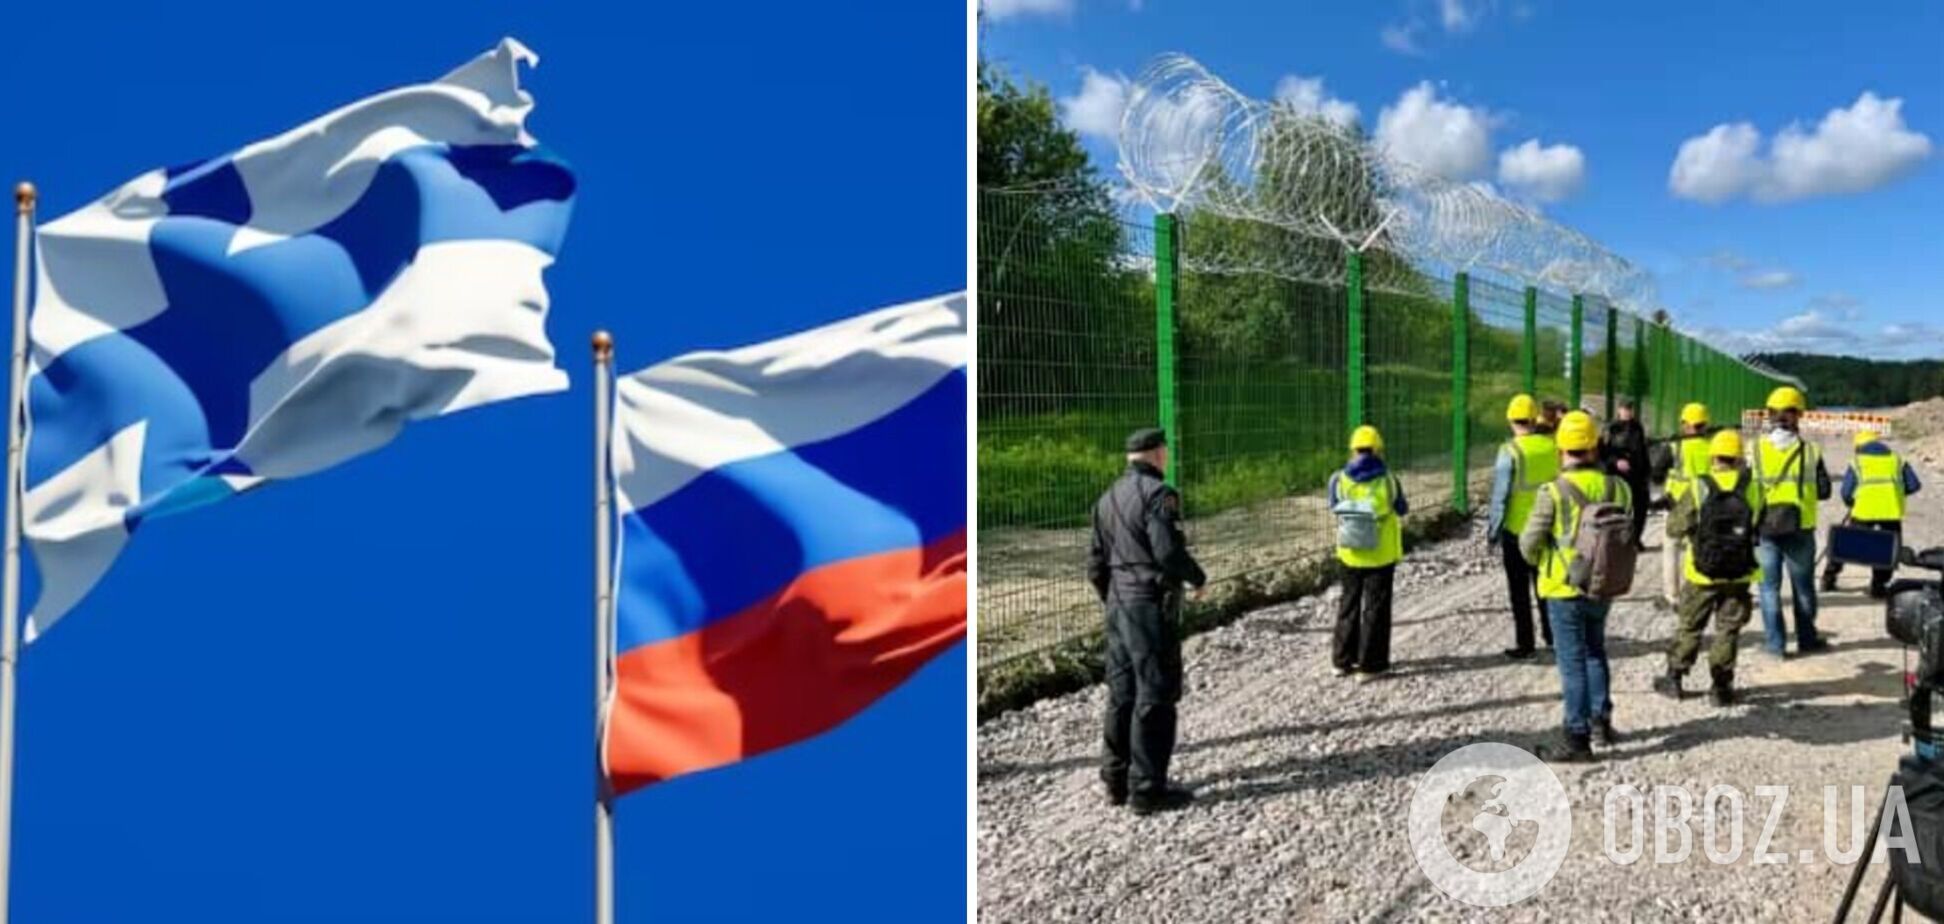 Ґрати і колючий дріт: у Фінляндії показали тестову ділянку стіни на кордоні з Росією. Фото